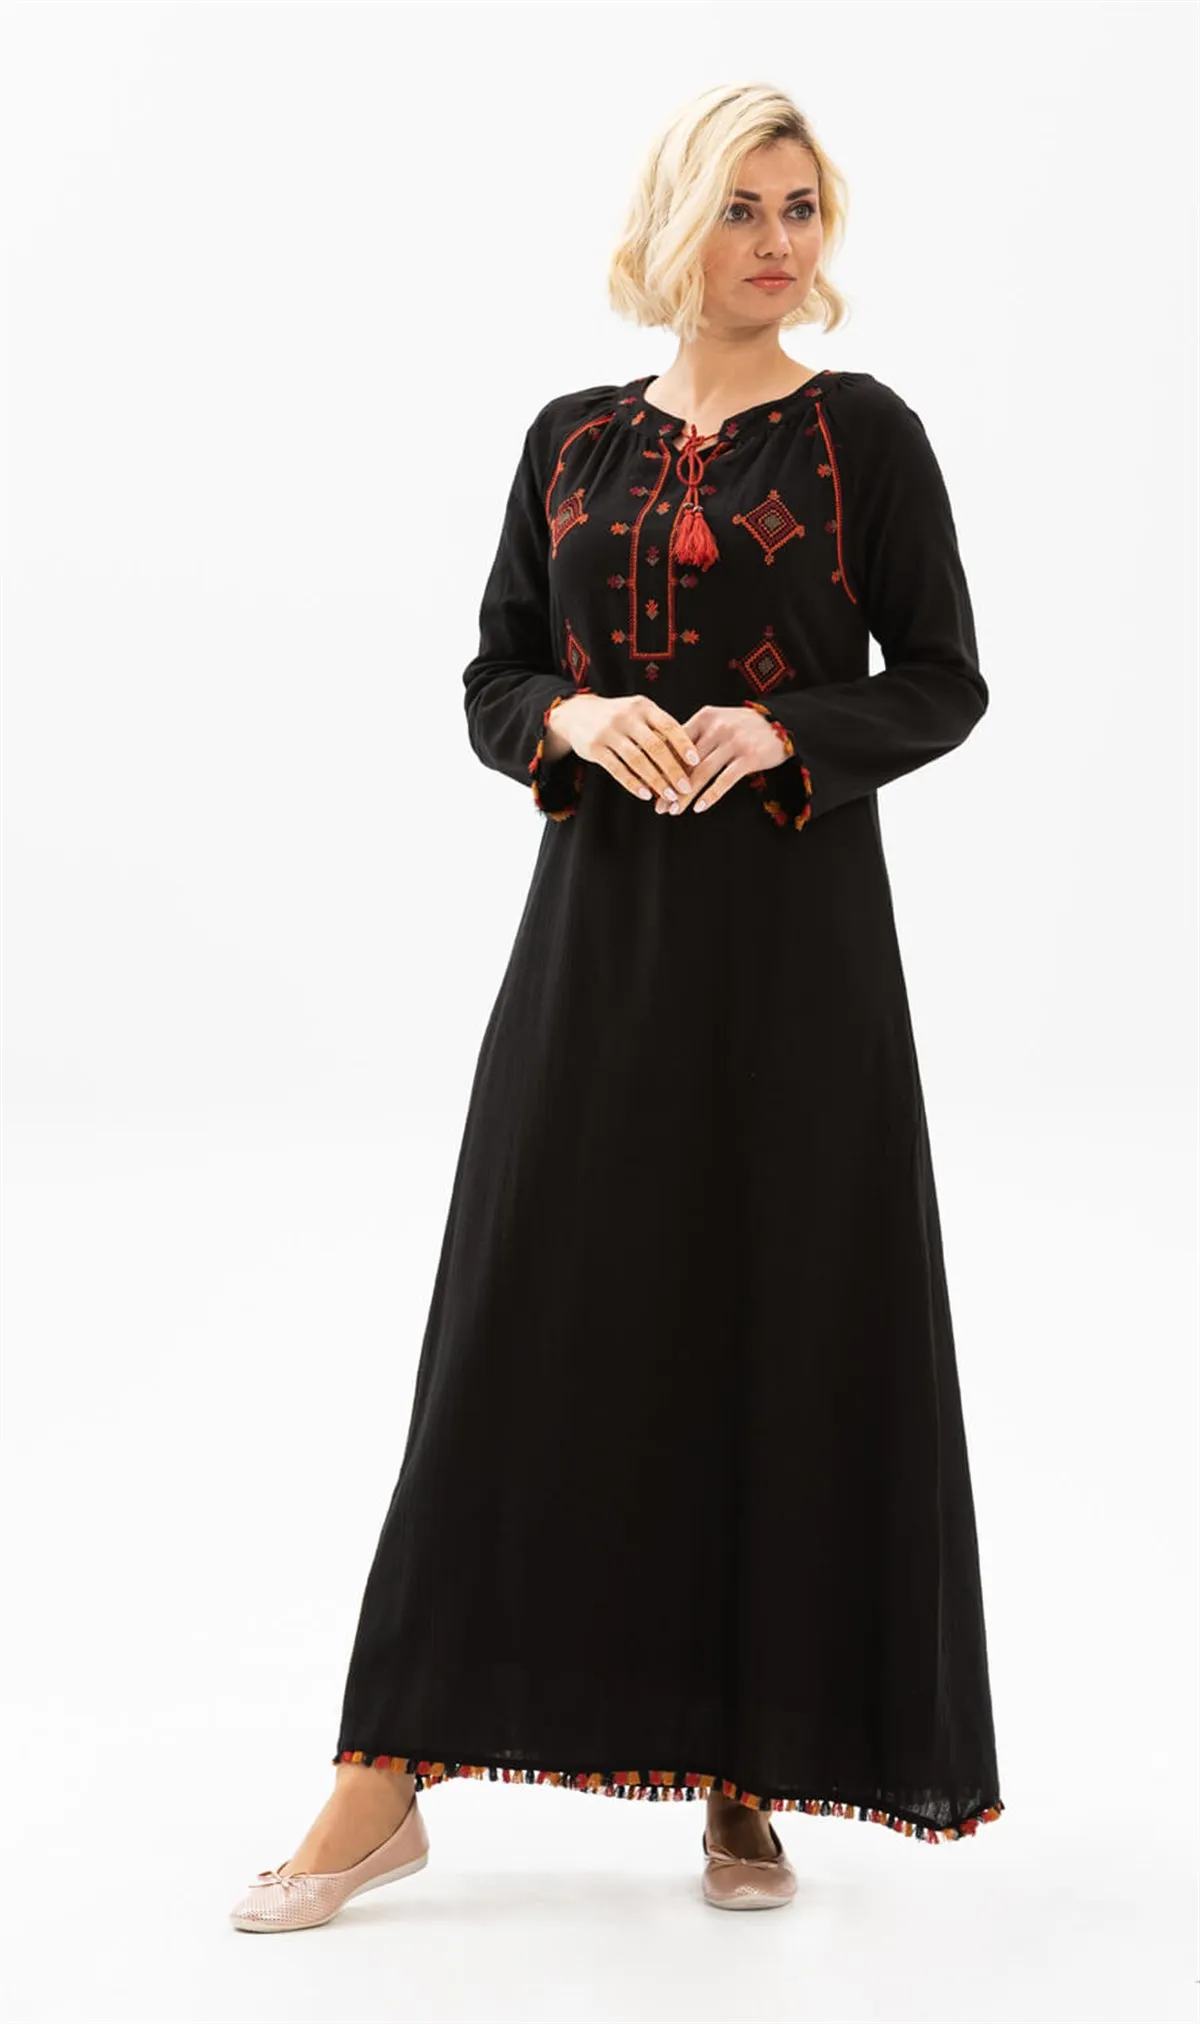 Платье черное с длинным рукавом, воротником-бахромой и кисточками